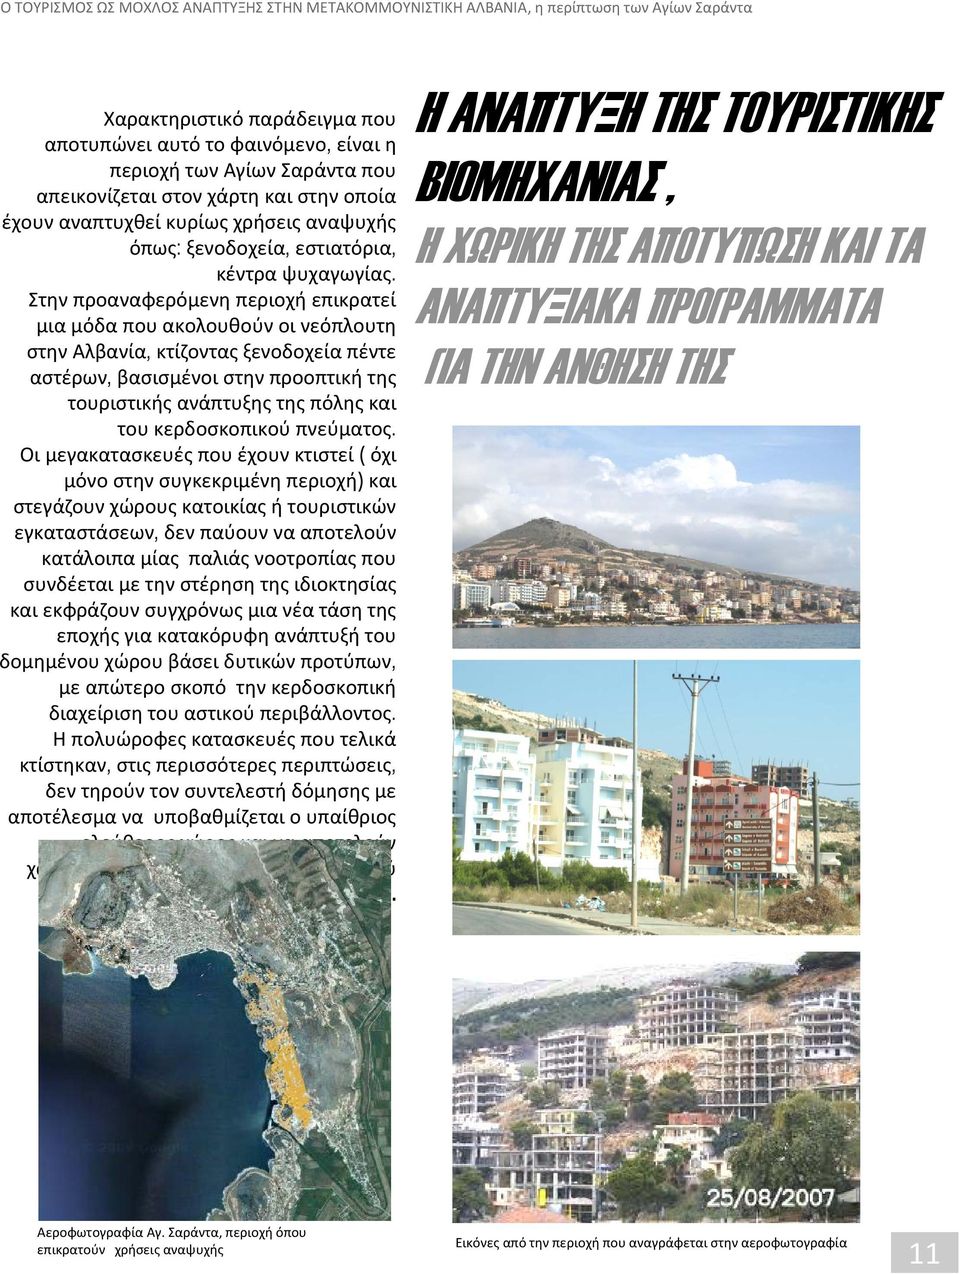 Στην προαναφερόμενη περιοχή επικρατεί μια μόδα που ακολουθούν οι νεόπλουτη στην Αλβανία, κτίζοντας ξενοδοχεία πέντε αστέρων, βασισμένοι στην προοπτική της τουριστικής ανάπτυξης της πόλης και του